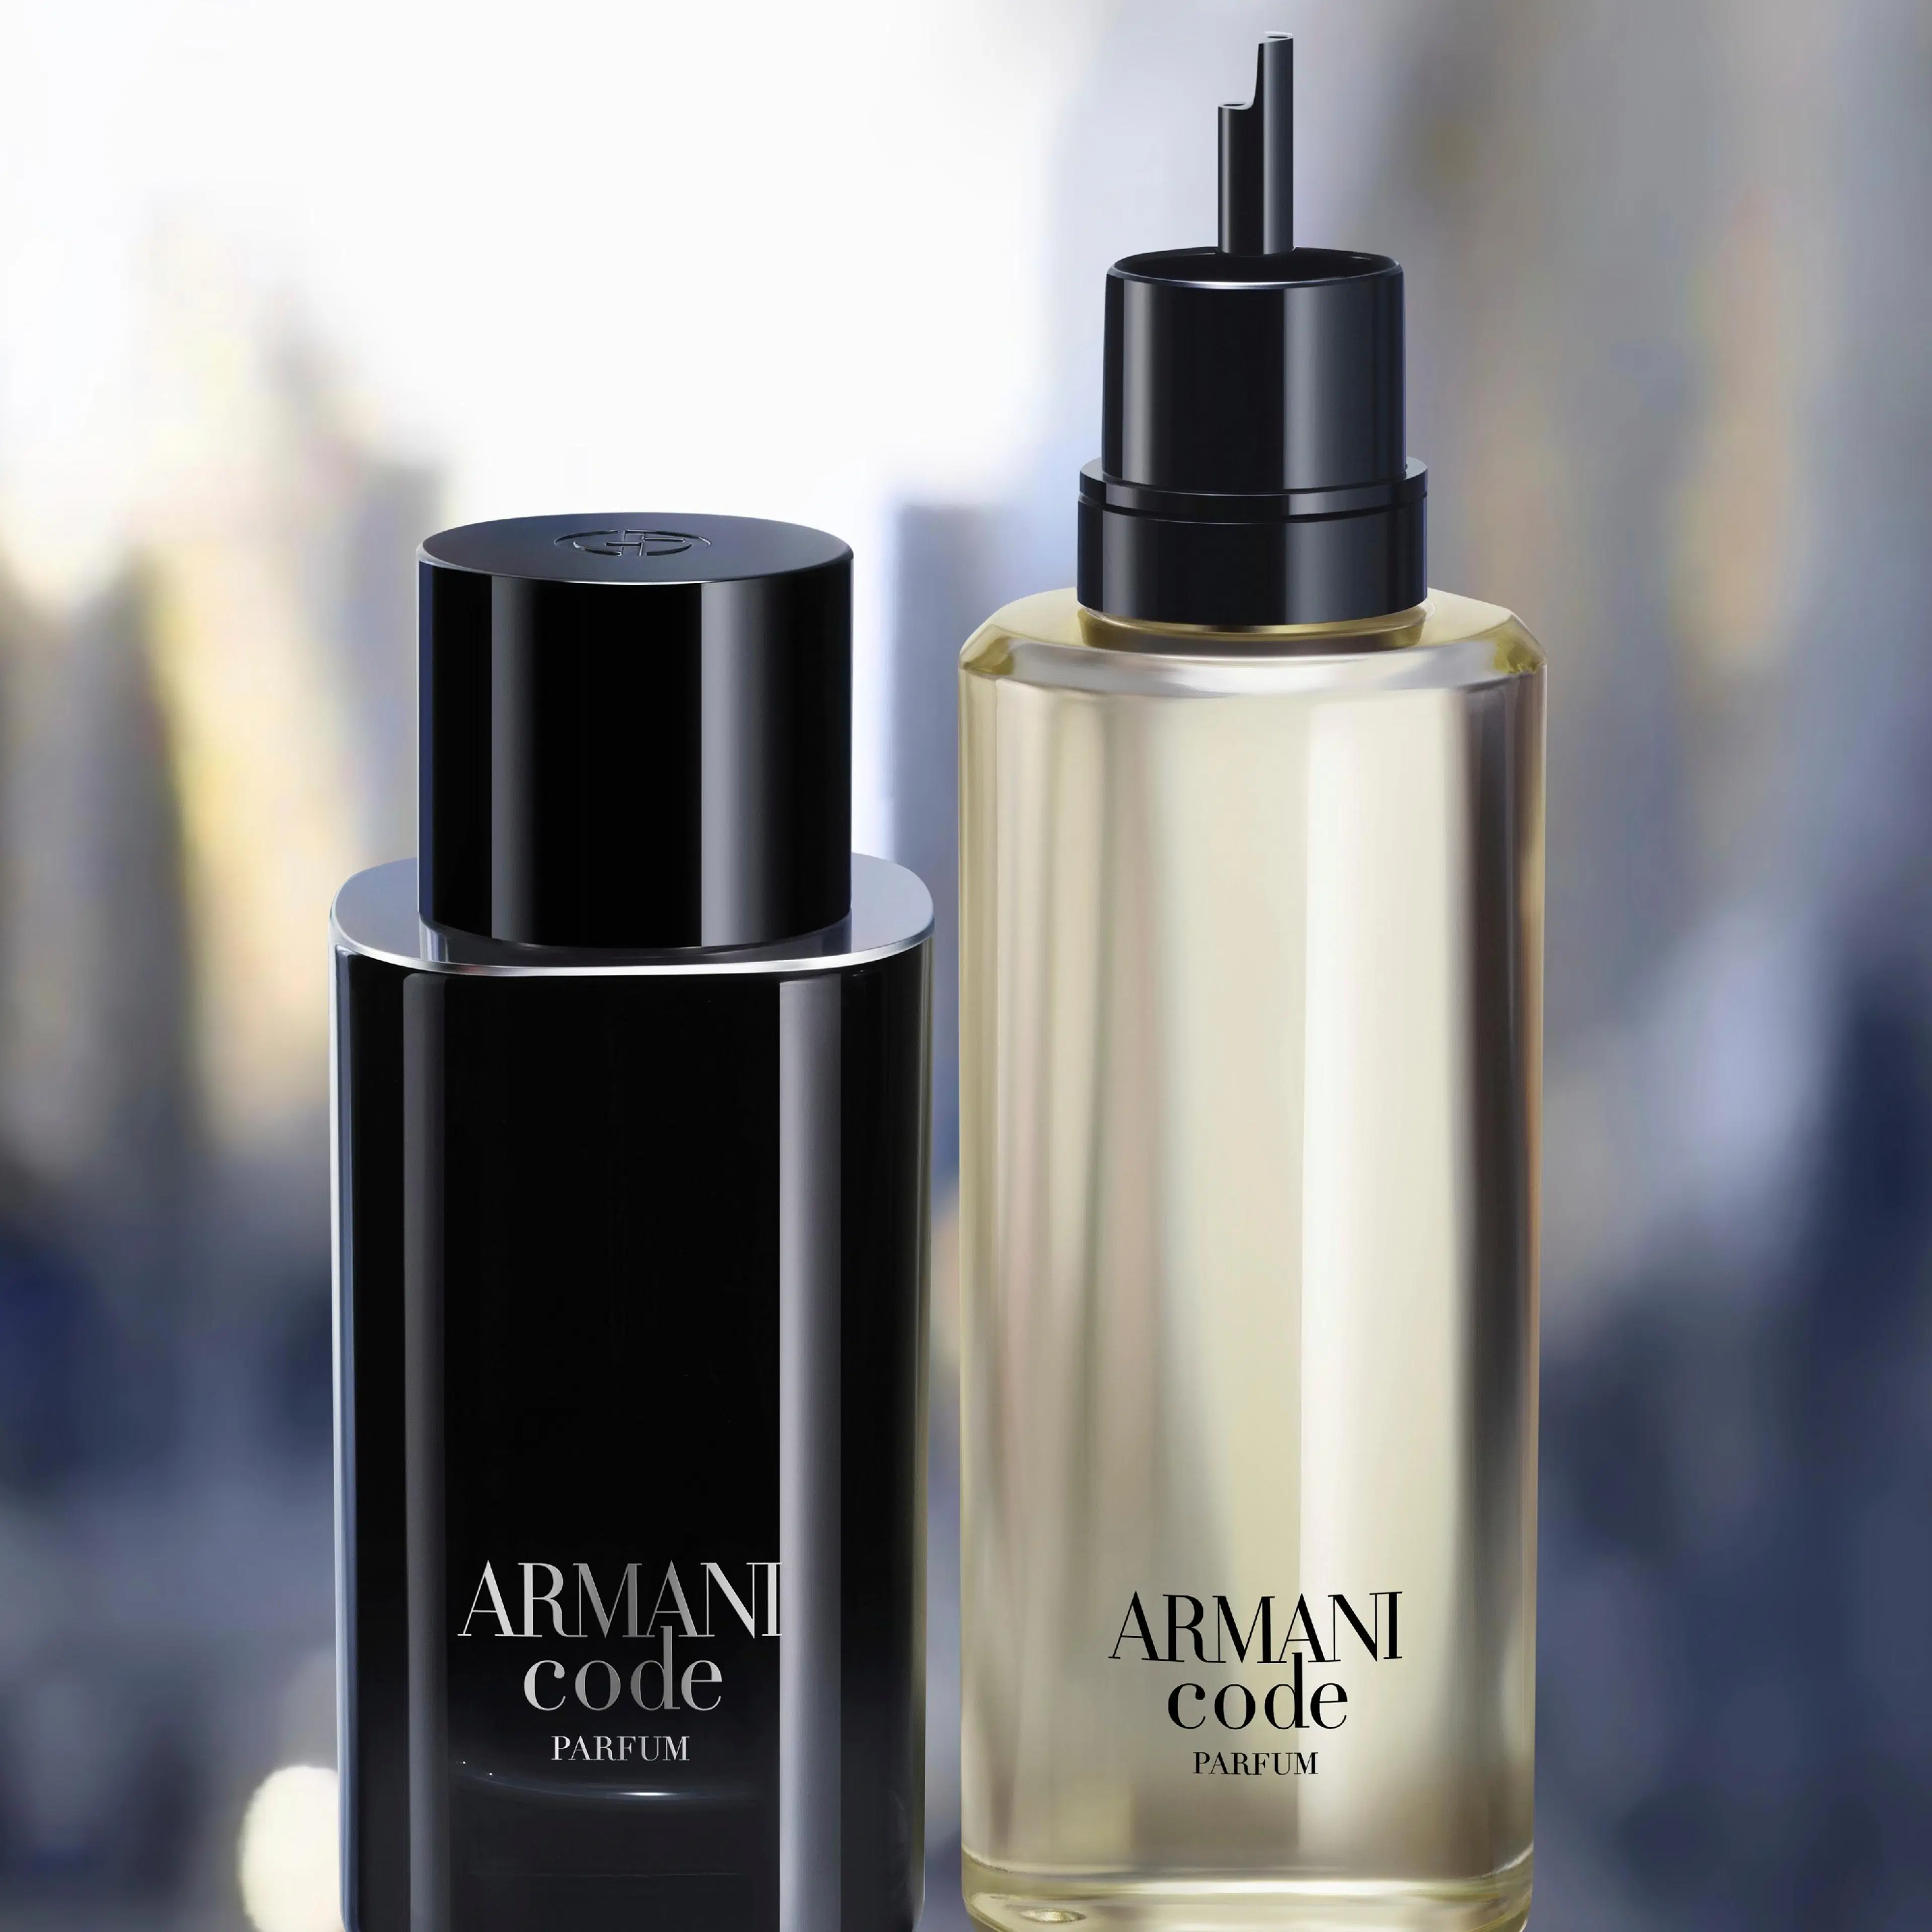 Armani Code Parfum täyttöpullo 150 ml